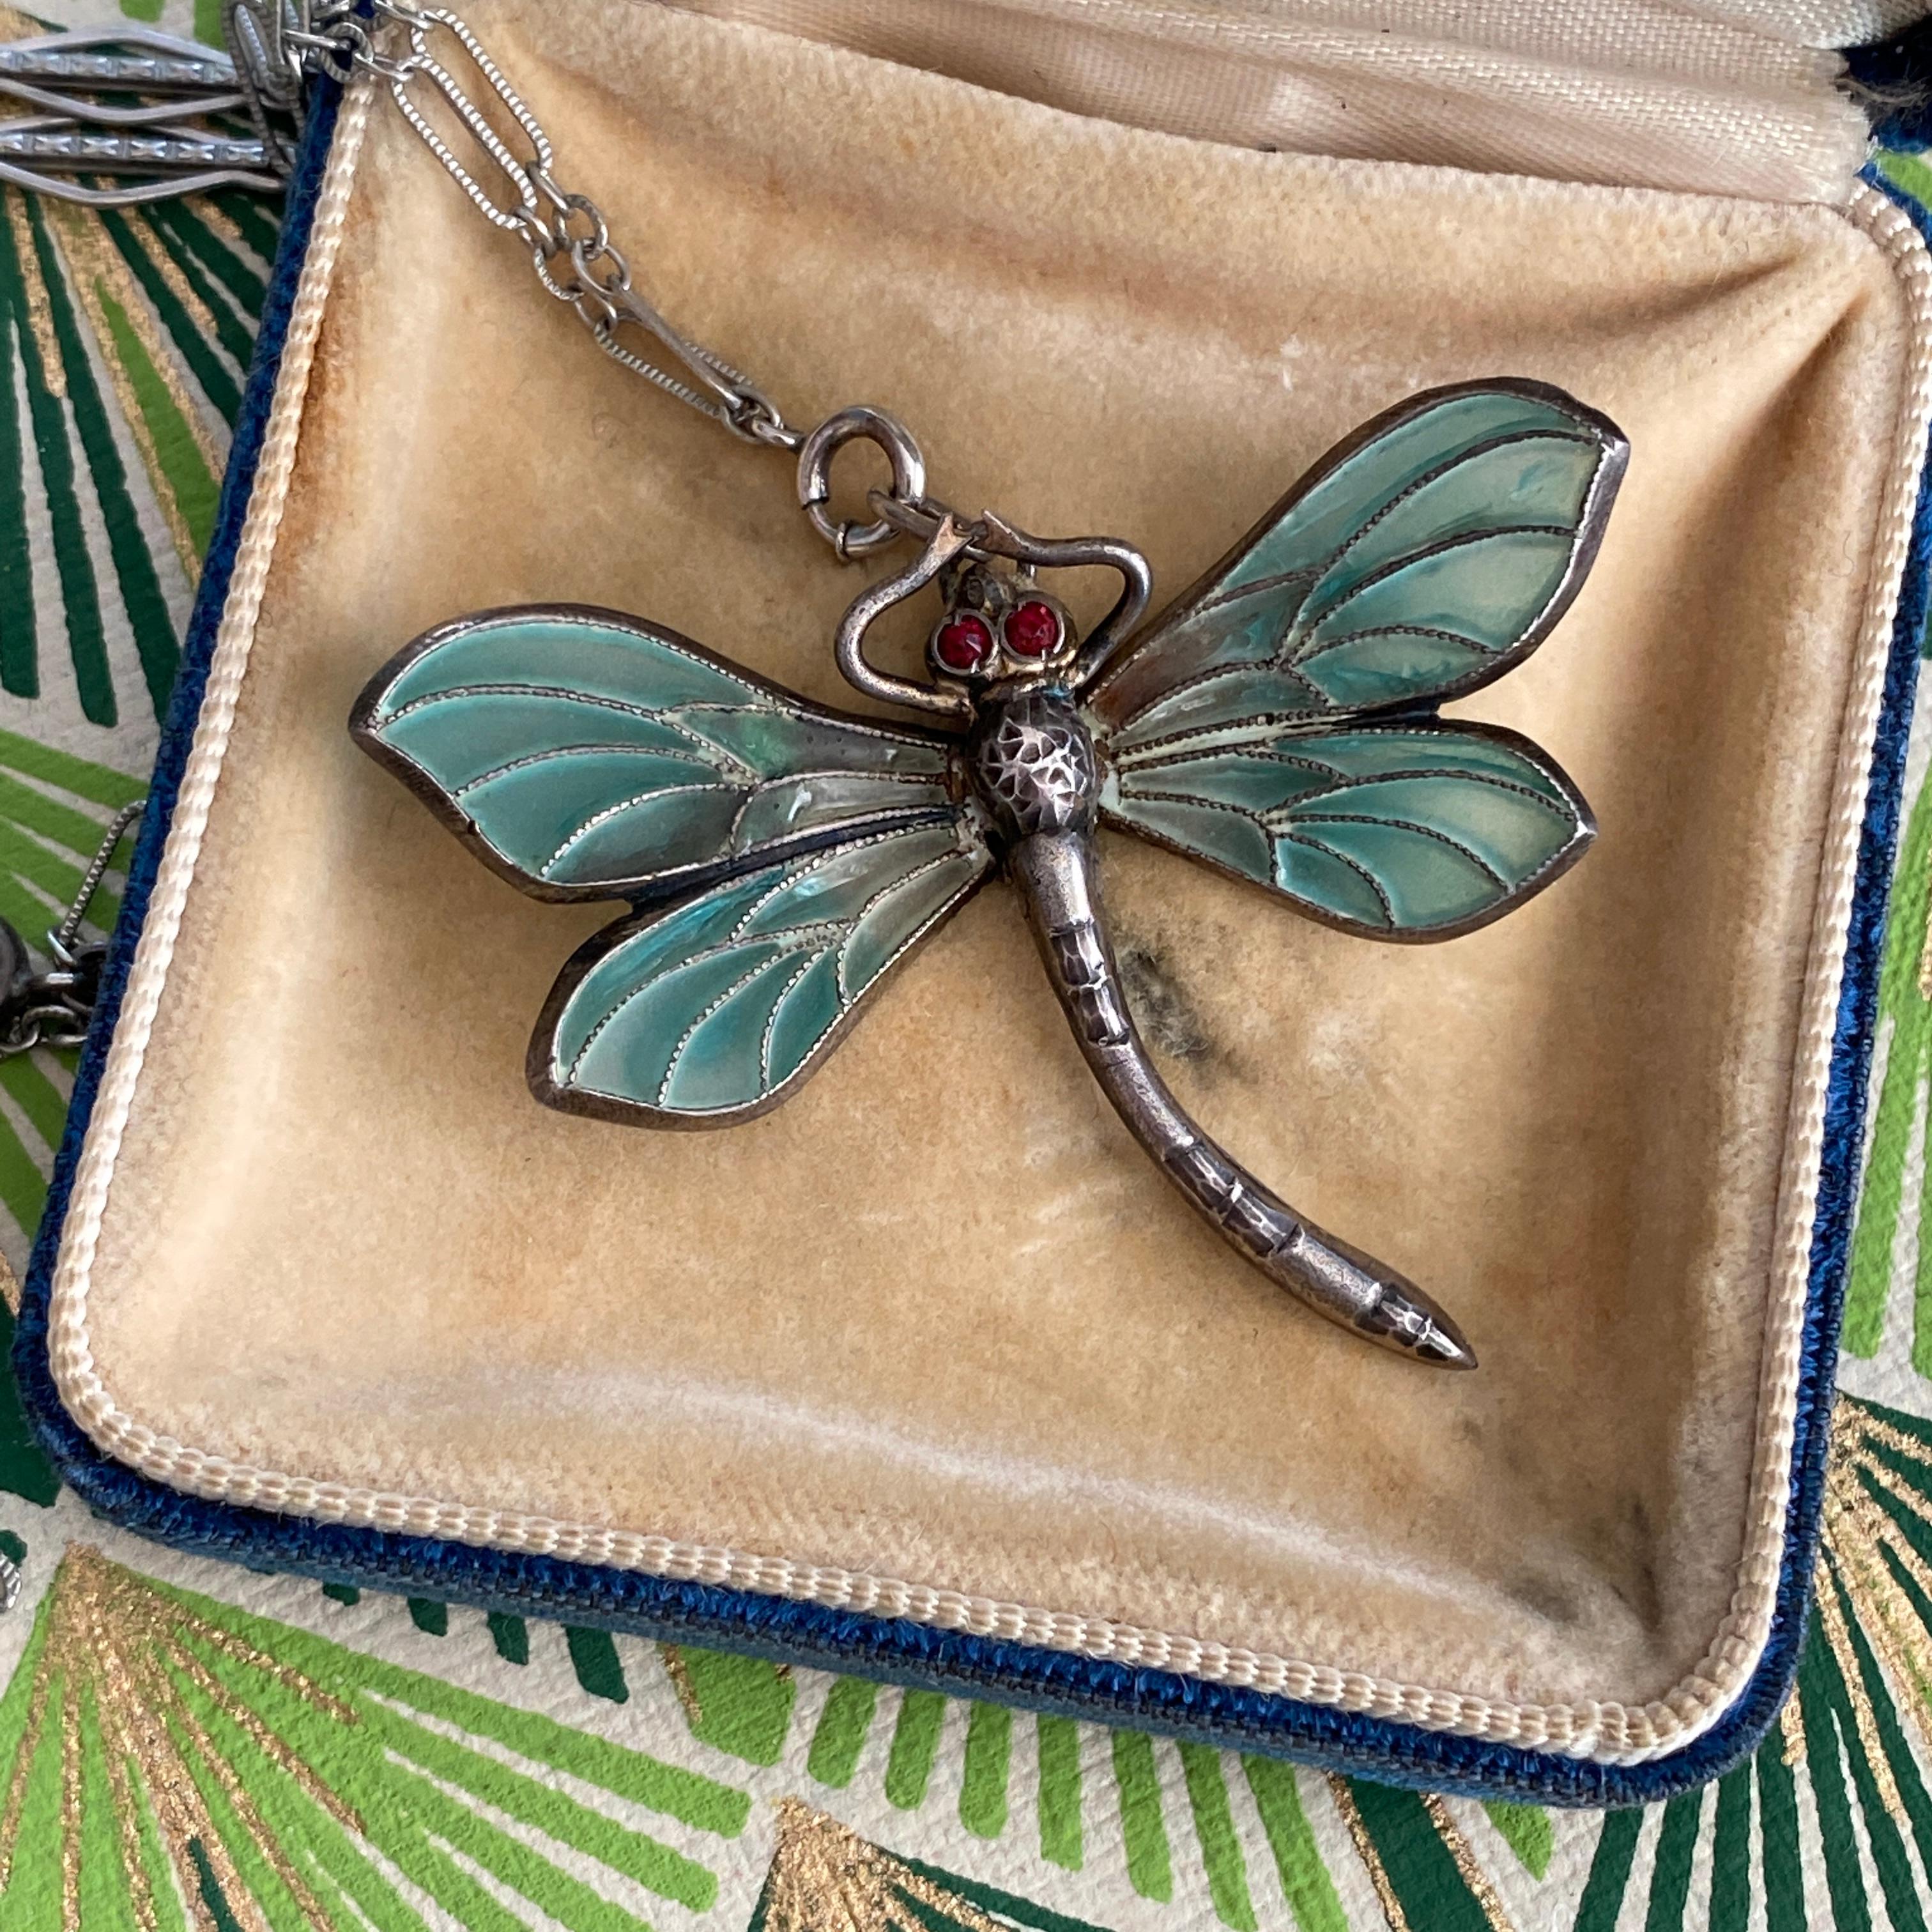 Art Nouveau Plique-a-Jour Dragonfly Silver Pendant Necklace For Sale 4